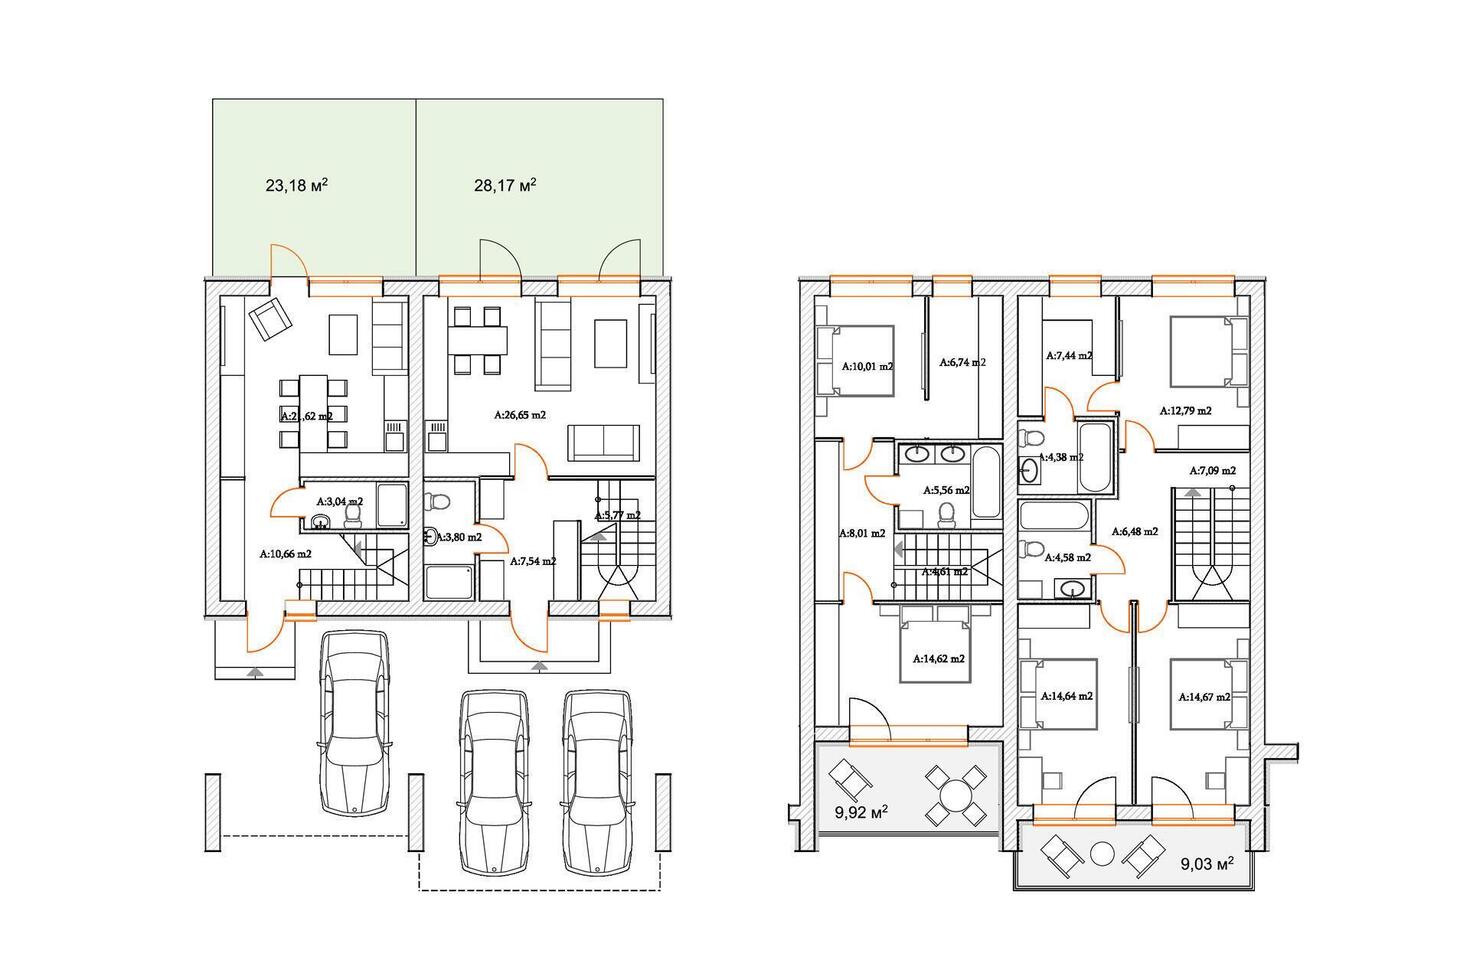 détaillé architectural privé maison sol plan, appartement mise en page, plan. vecteur illustration